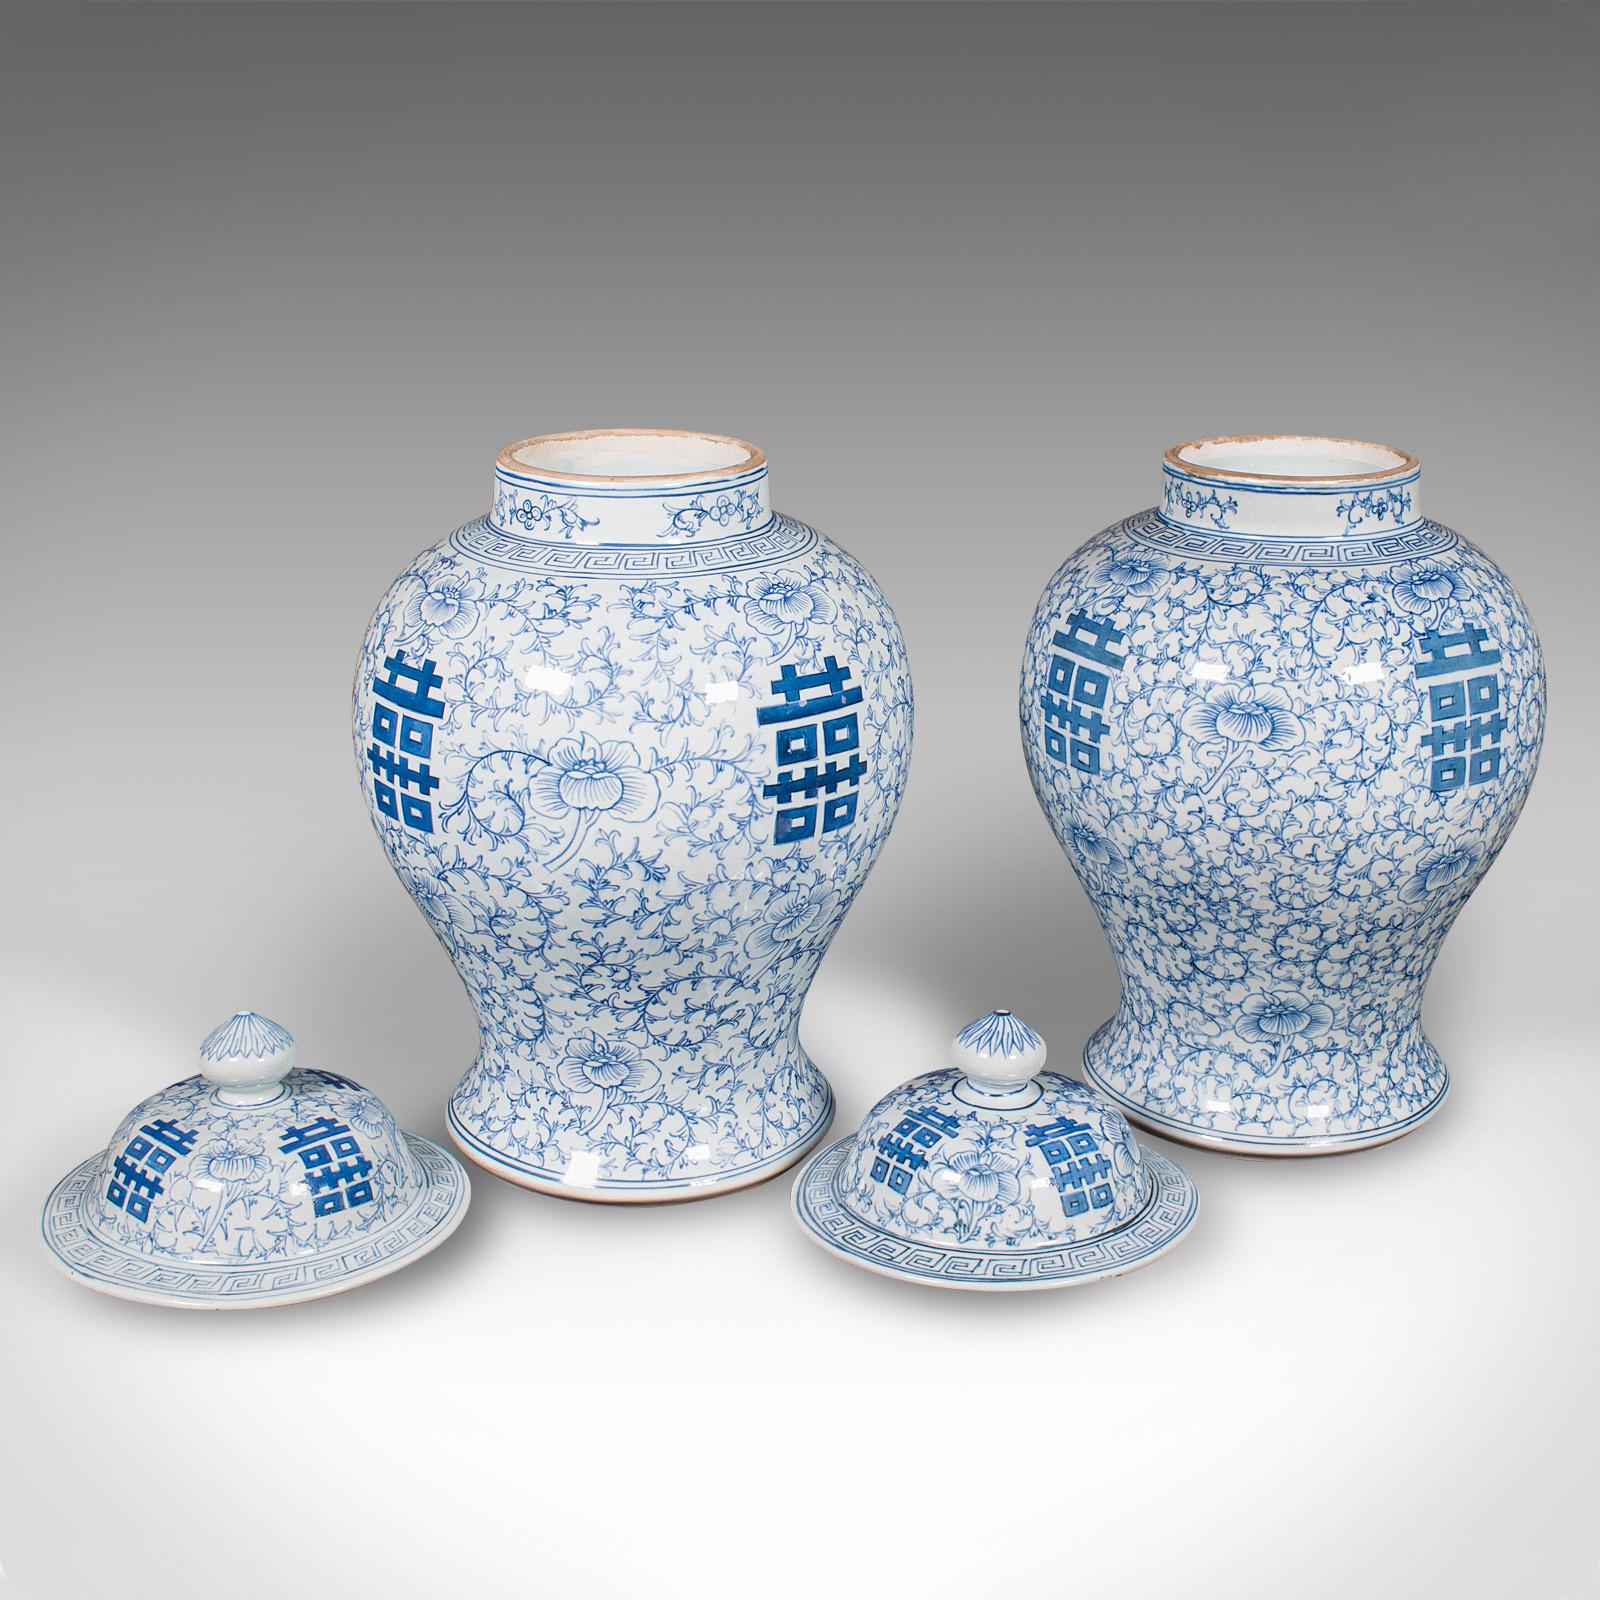 Dies ist ein handwerklich hergestelltes Paar dekorativer Vintage-Vasen. Eine chinesische Blumenurne aus Keramik mit Deckel aus der späten Art-Déco-Periode, um 1940.

Hübsches Paar großzügiger Balusterurnen mit ansprechendem Dekor
Mit wünschenswerter